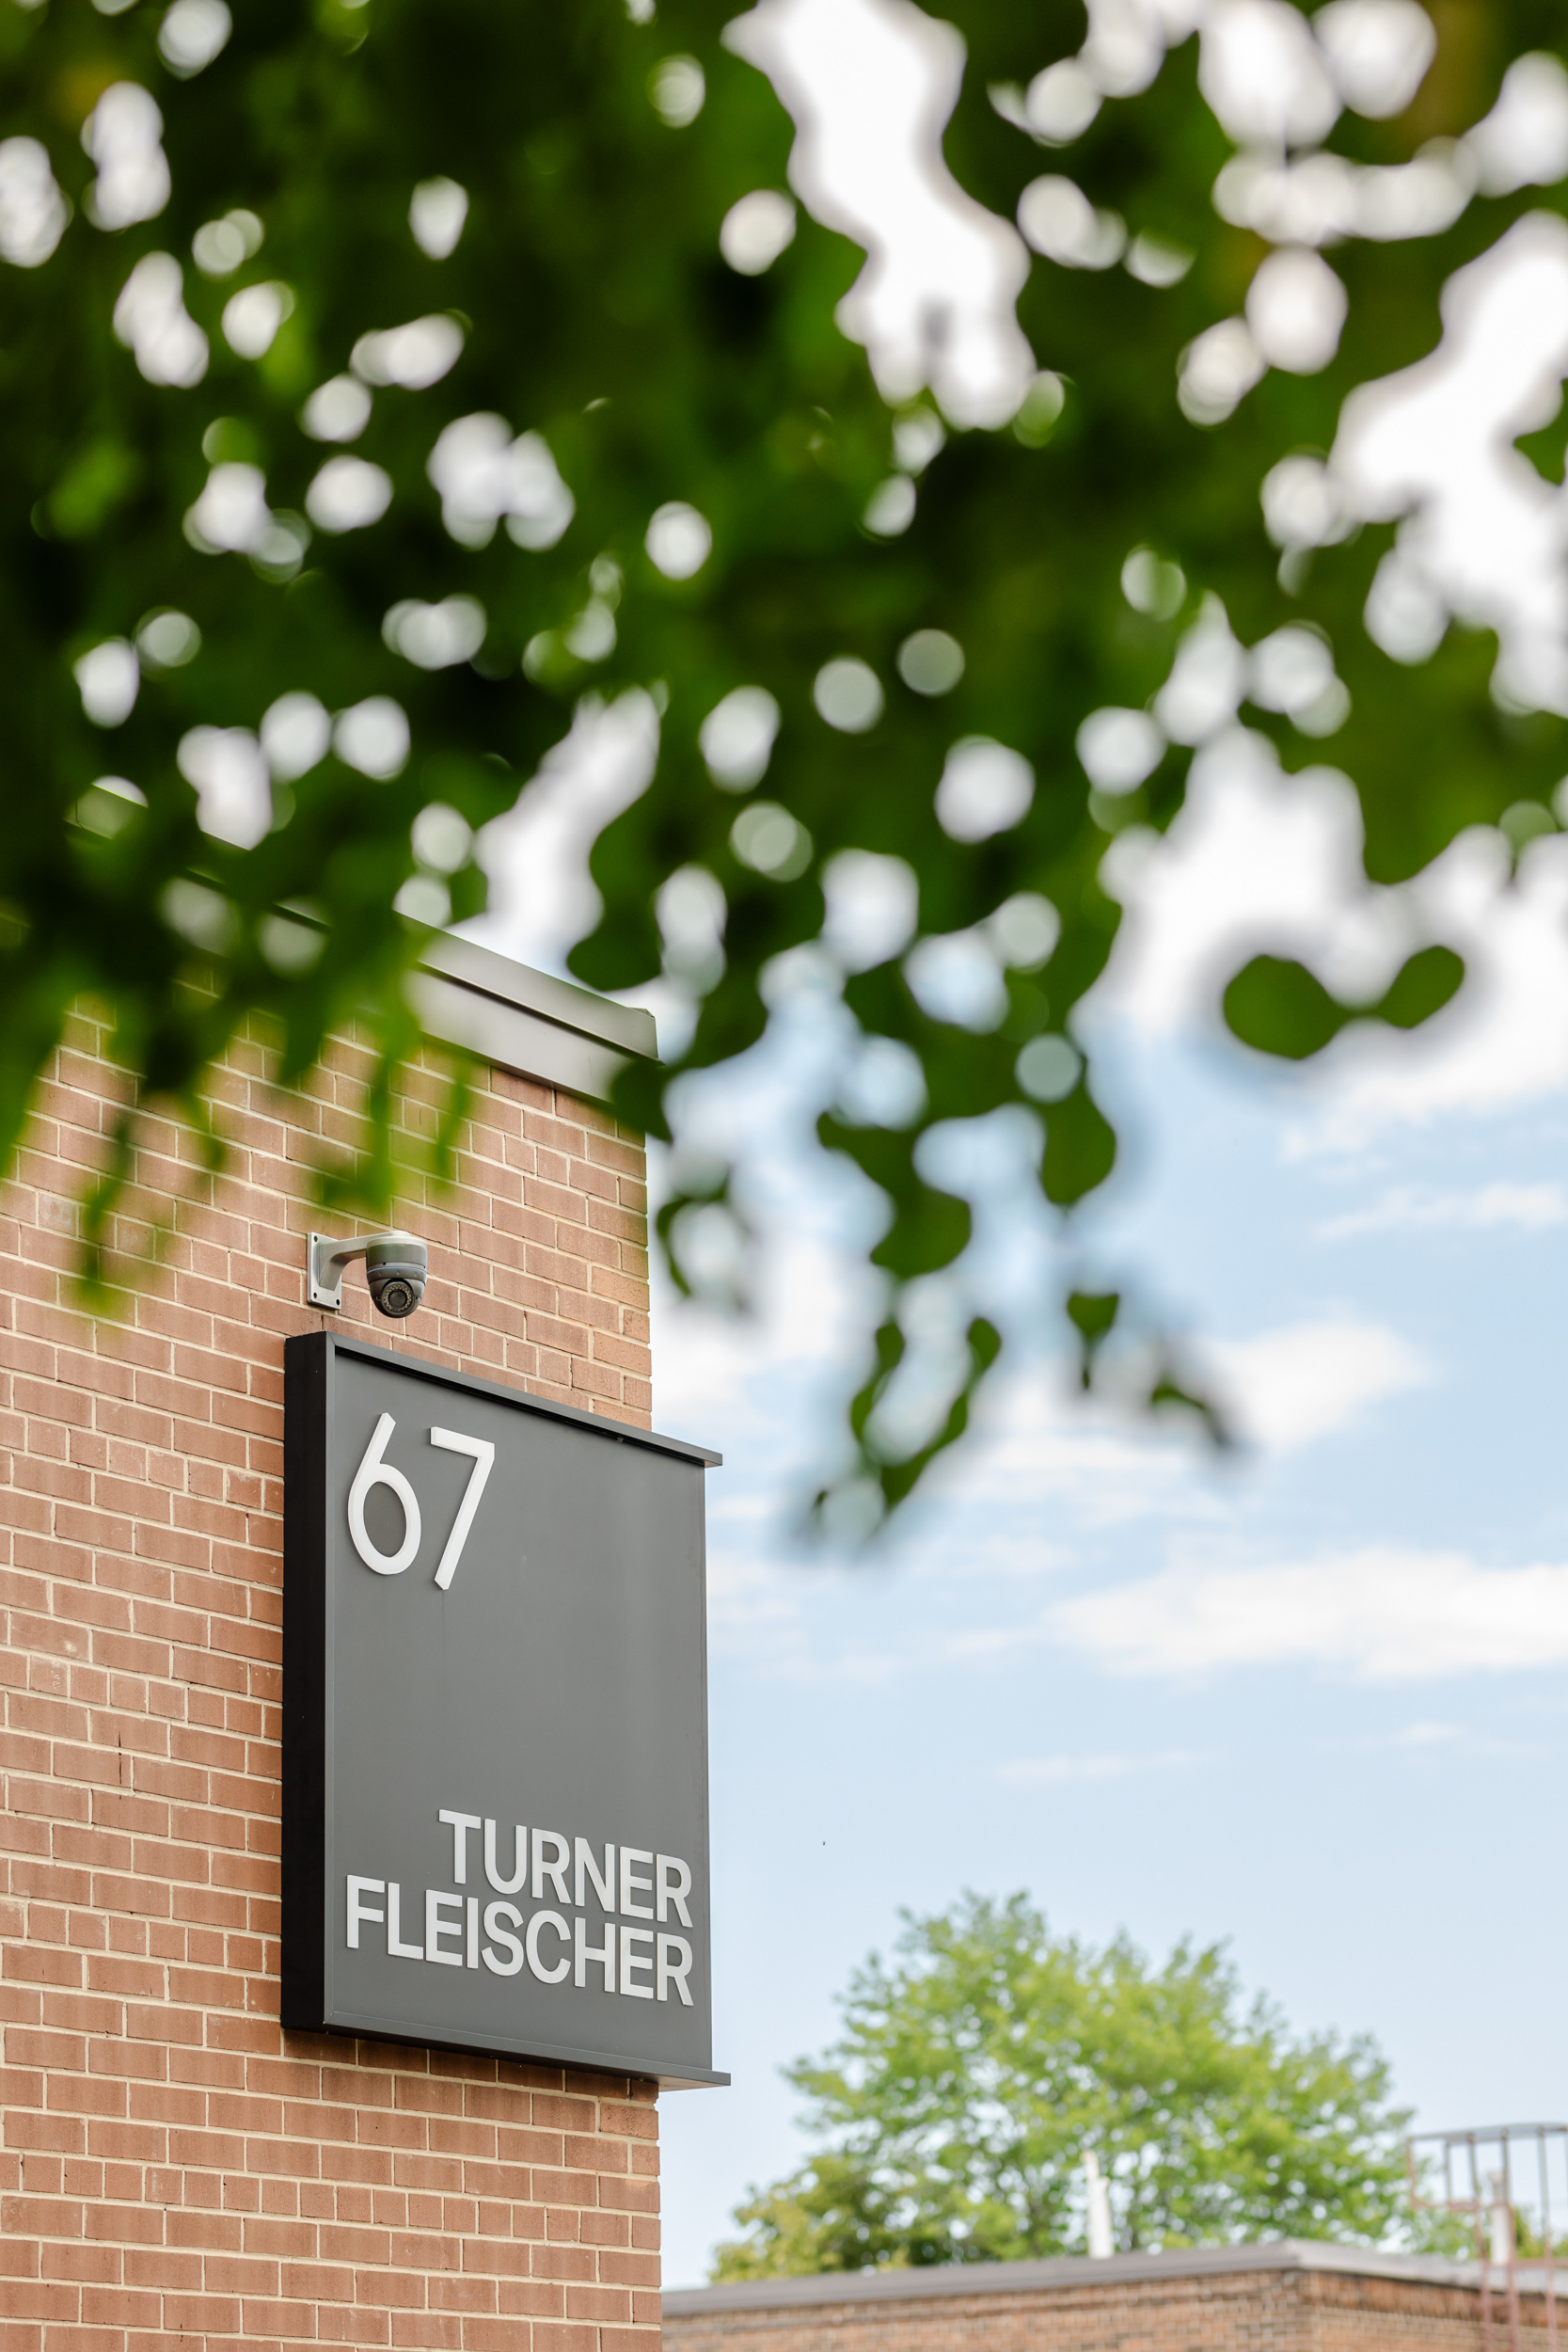 Turner Fleischer building with a sign that reads 67 turner fehlscher.